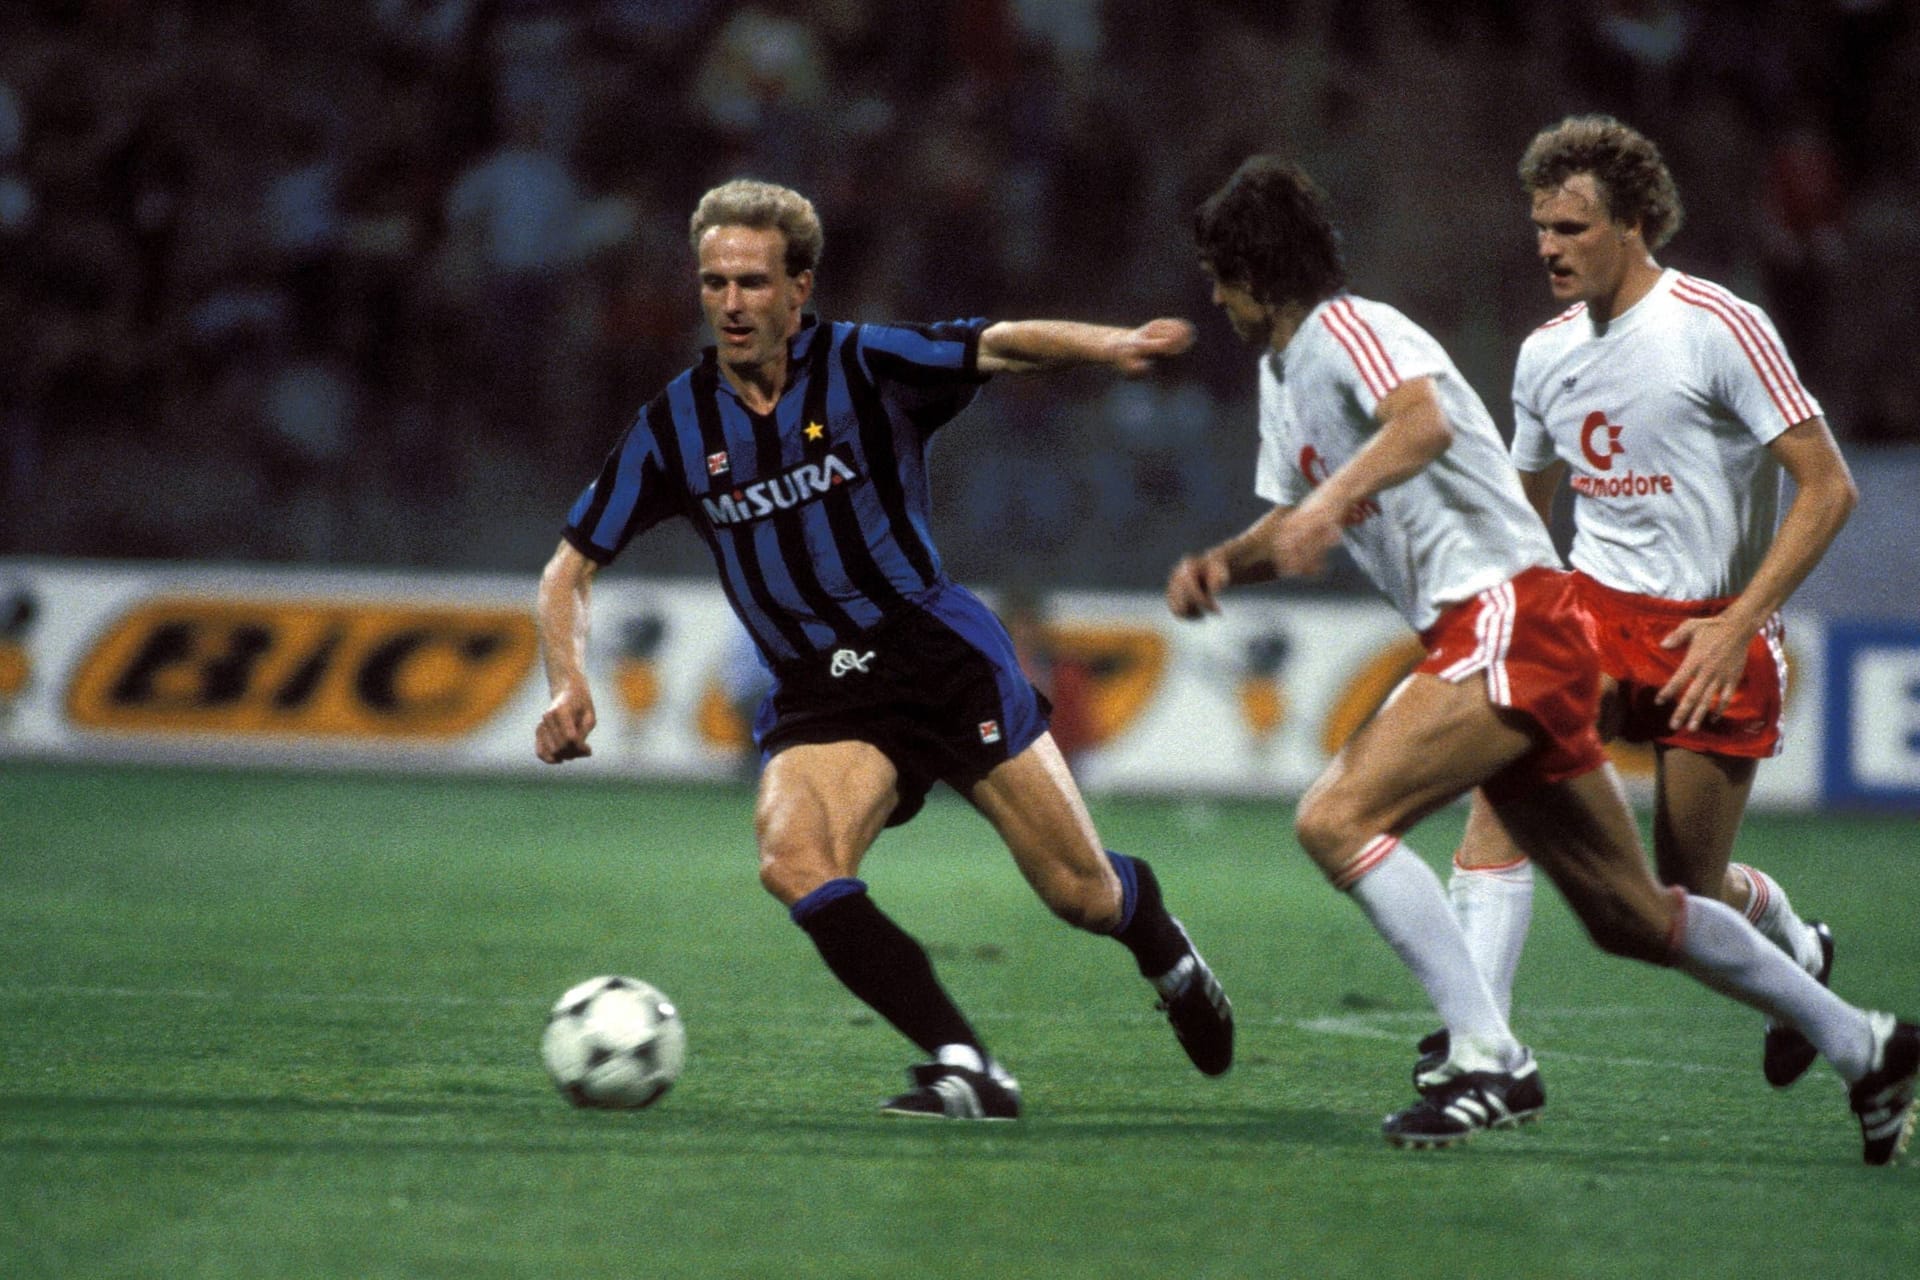 Ab Sommer 1984 spielt Rummenigge für Inter Mailand in der Serie A. Die Bayern verlässt er mit 162 Toren in 310 Spielen – bis heute die drittmeisten der Vereinshistorie.